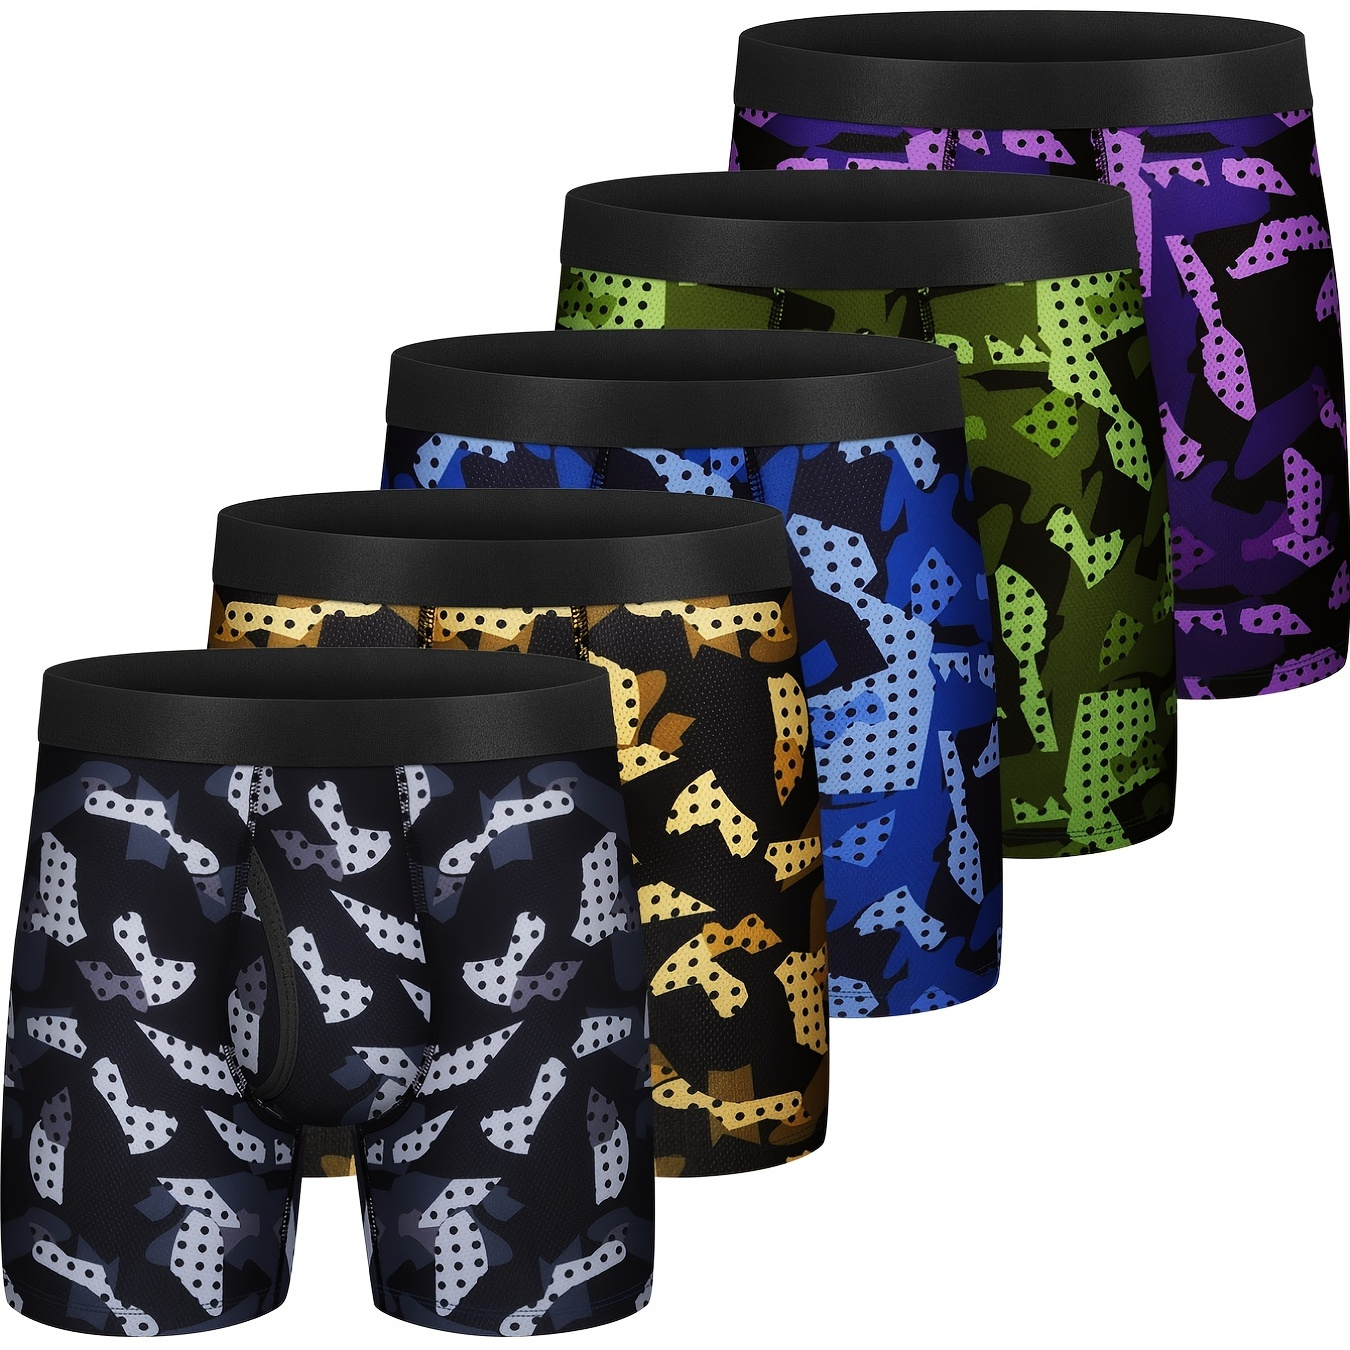 

5pcs Men's Graphic Breathable Comfortable Soft Quick Drying Boxer Briefs Underwear, Multicolor Set